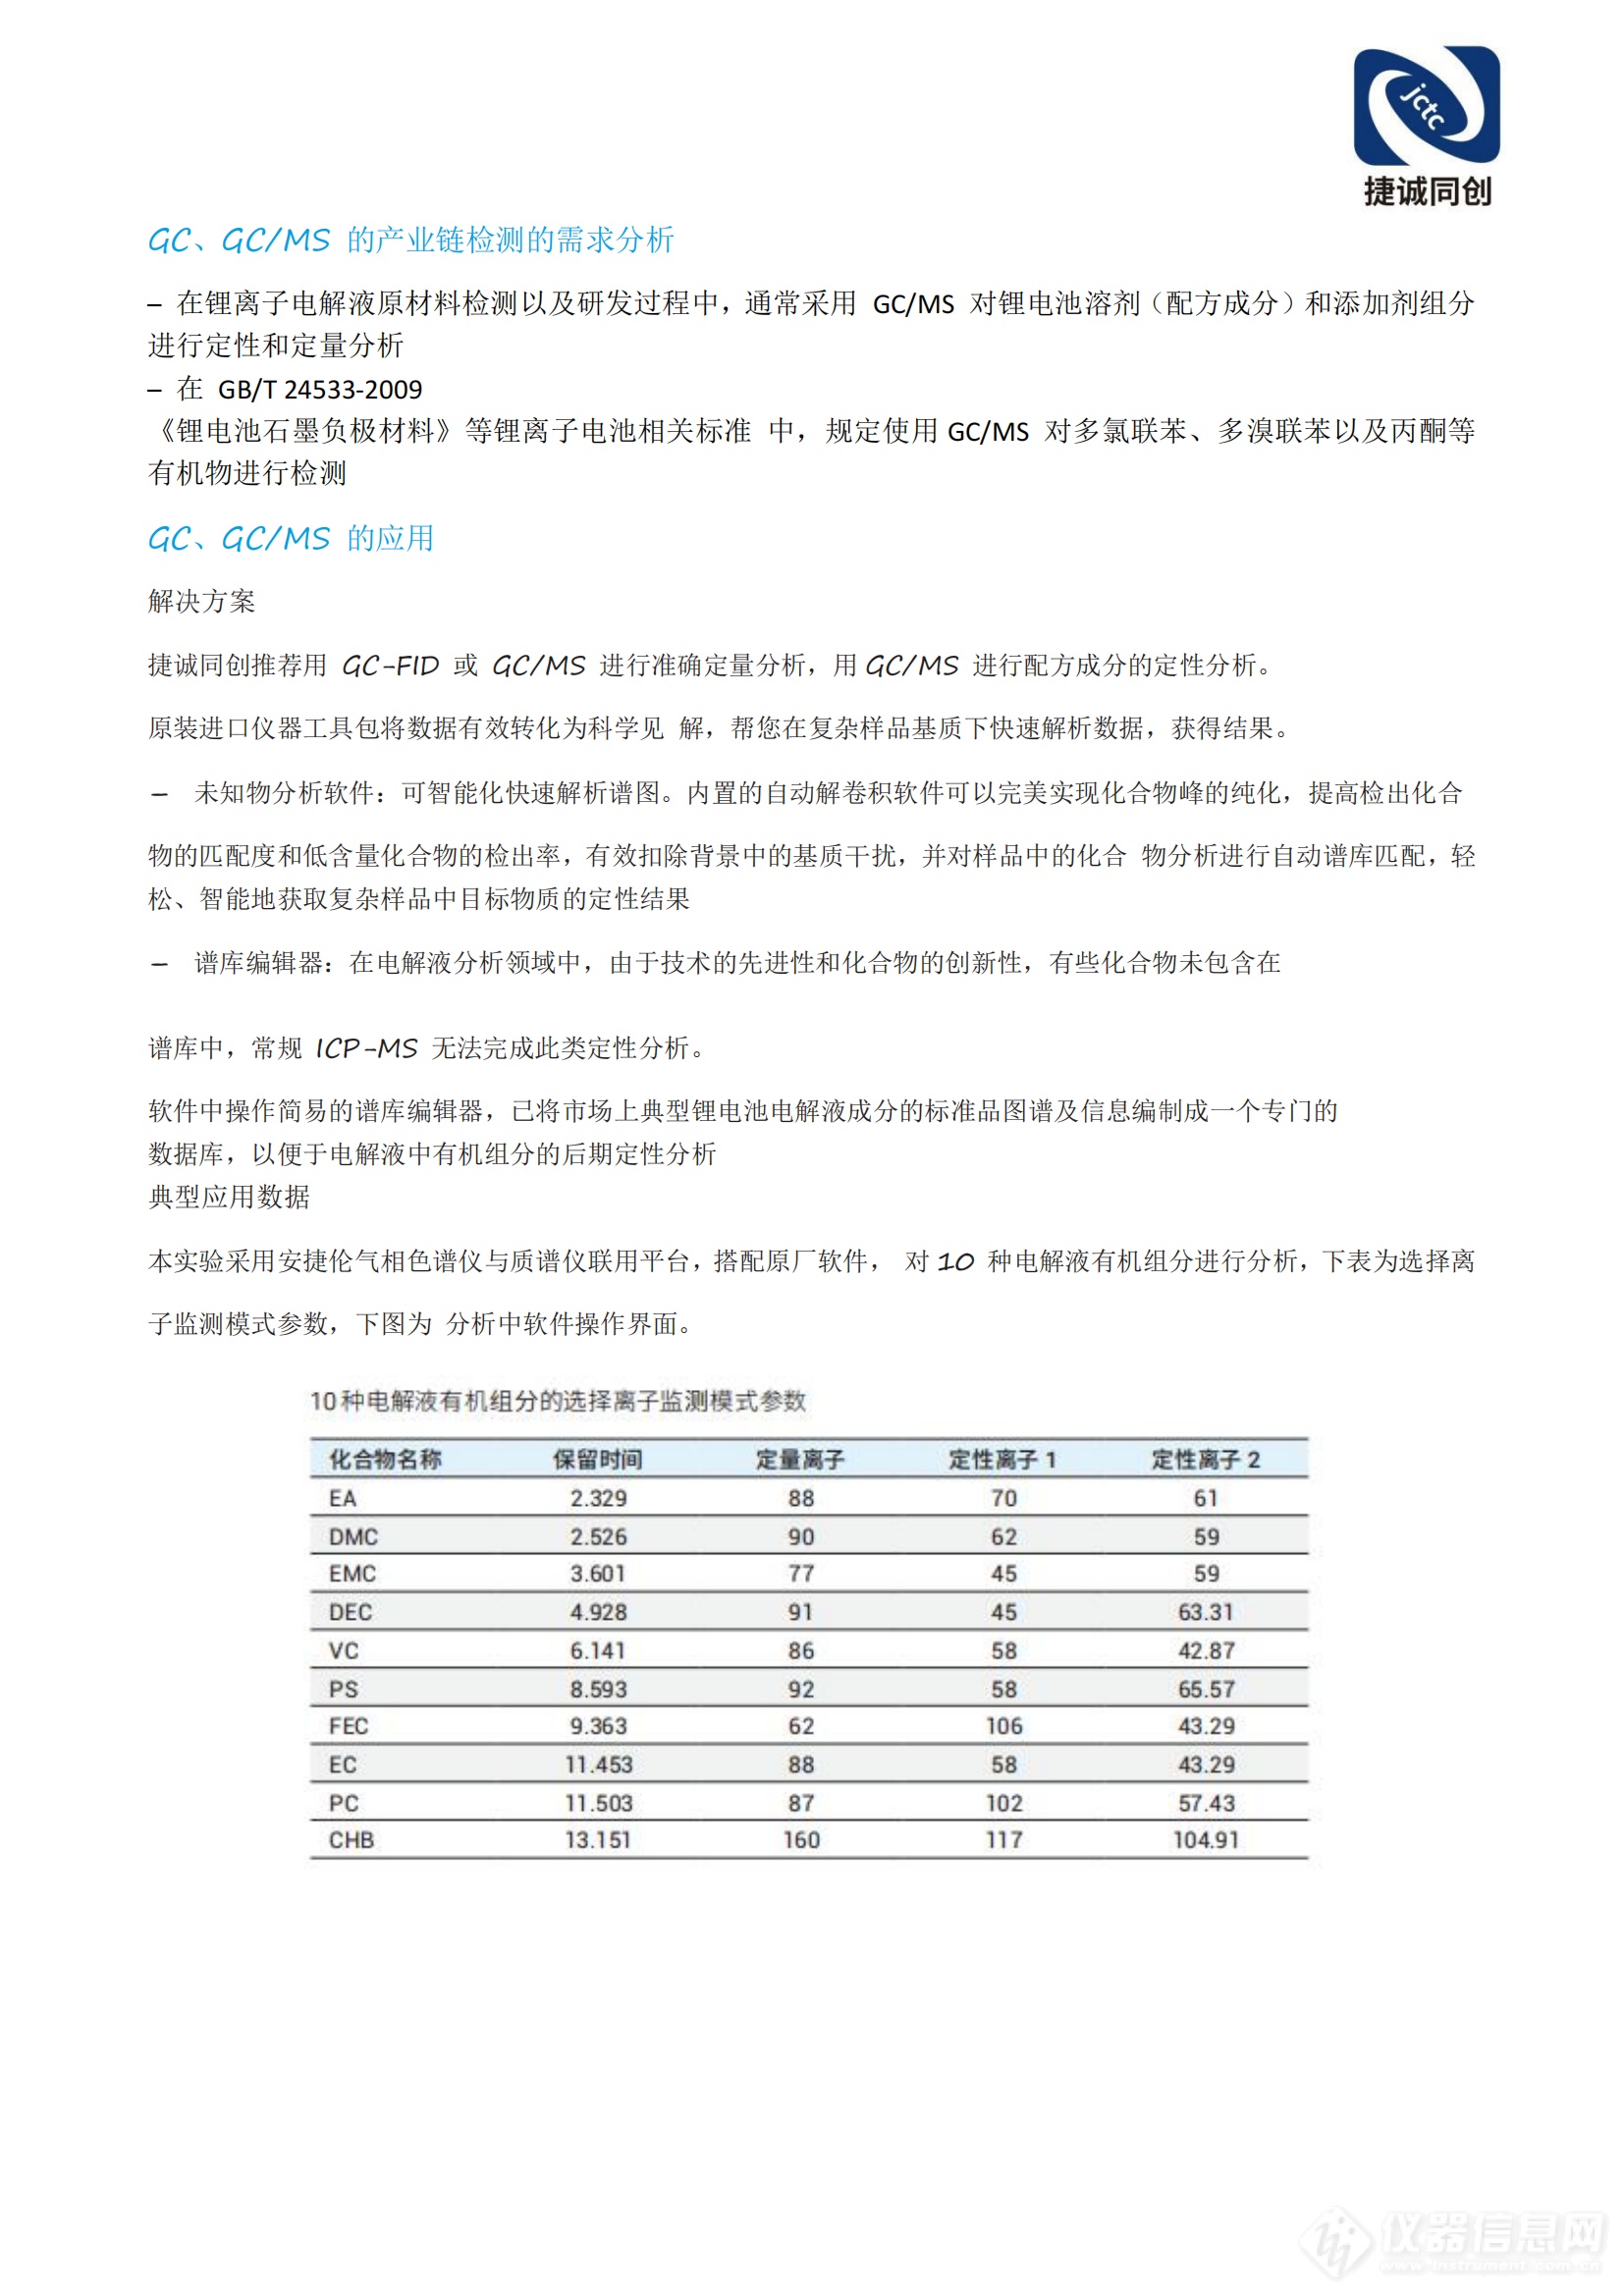 北京捷诚同创科技有限公司锂电池解决方案(2)_08.png